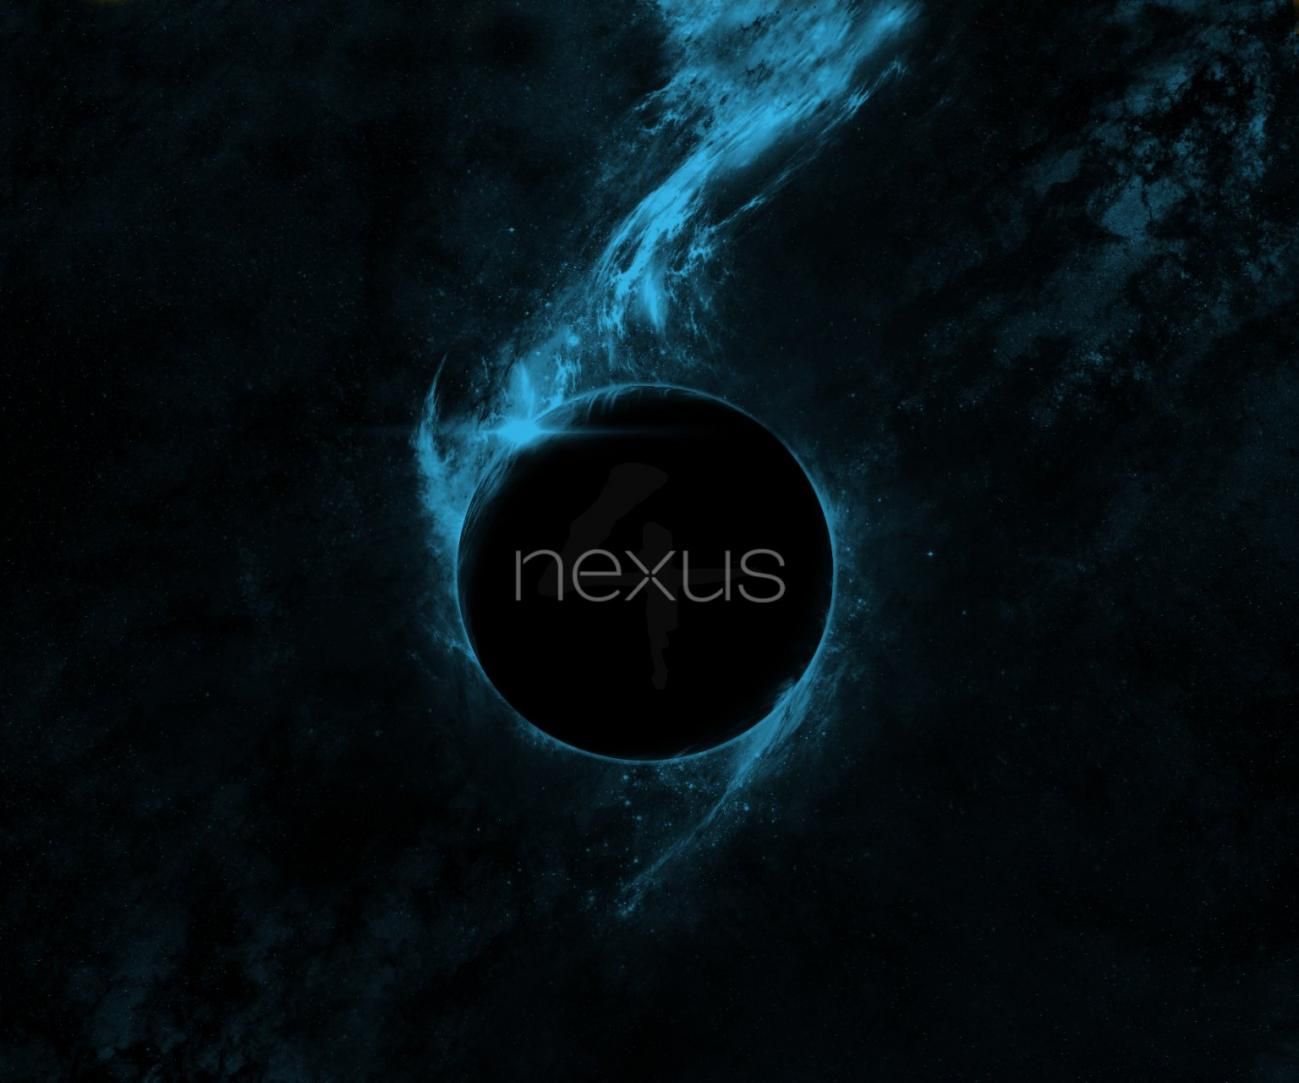 Nexus Wallpapers